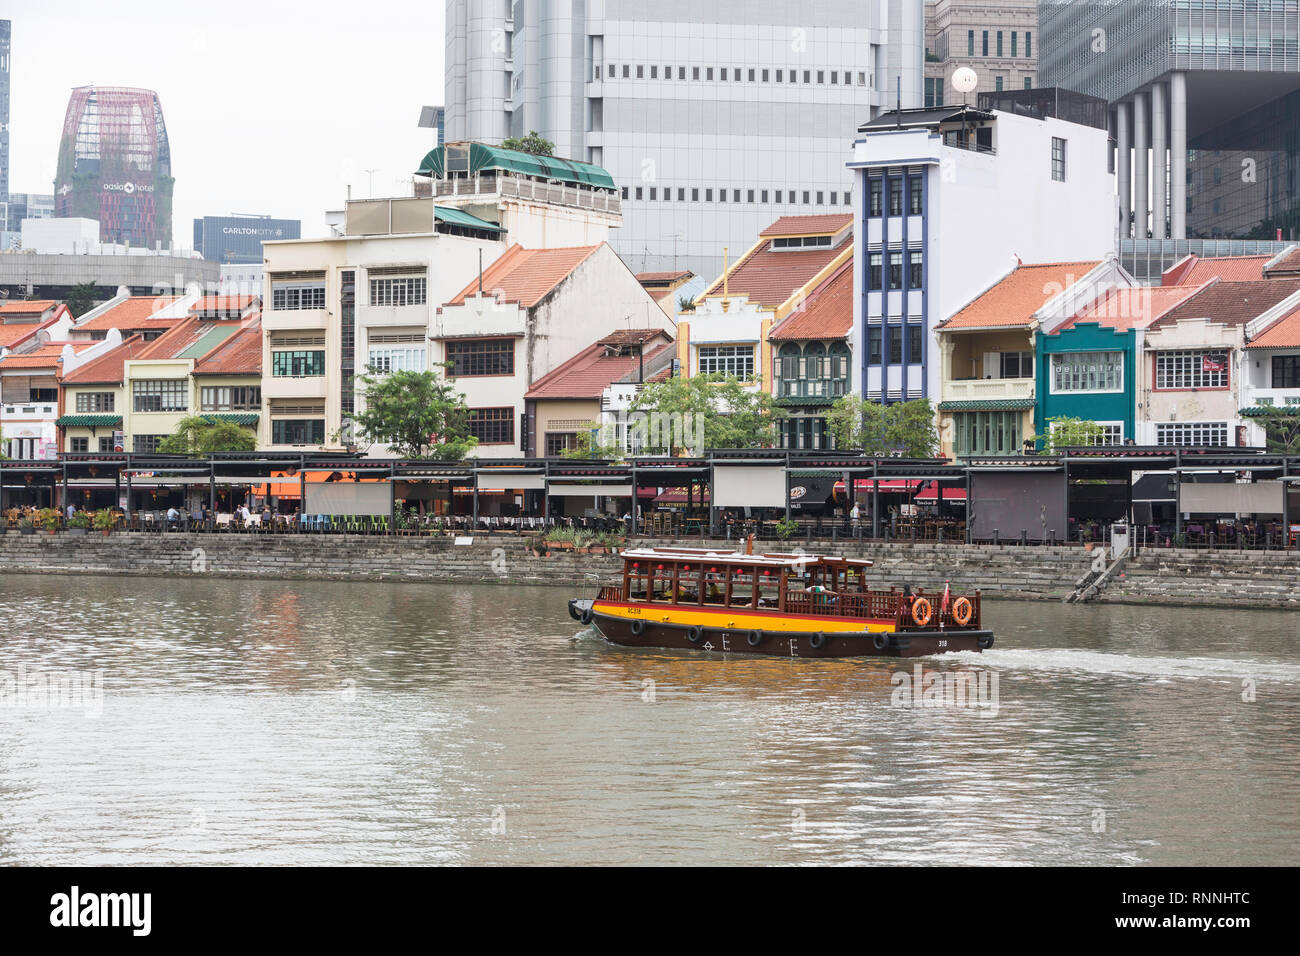 Wasser Taxi auf dem Singapore River. Boat Quay, ehemaligen Shop Häuser jetzt Restaurants und Bars. Gebäude der Financial District im Hintergrund. Singapur. Stockfoto